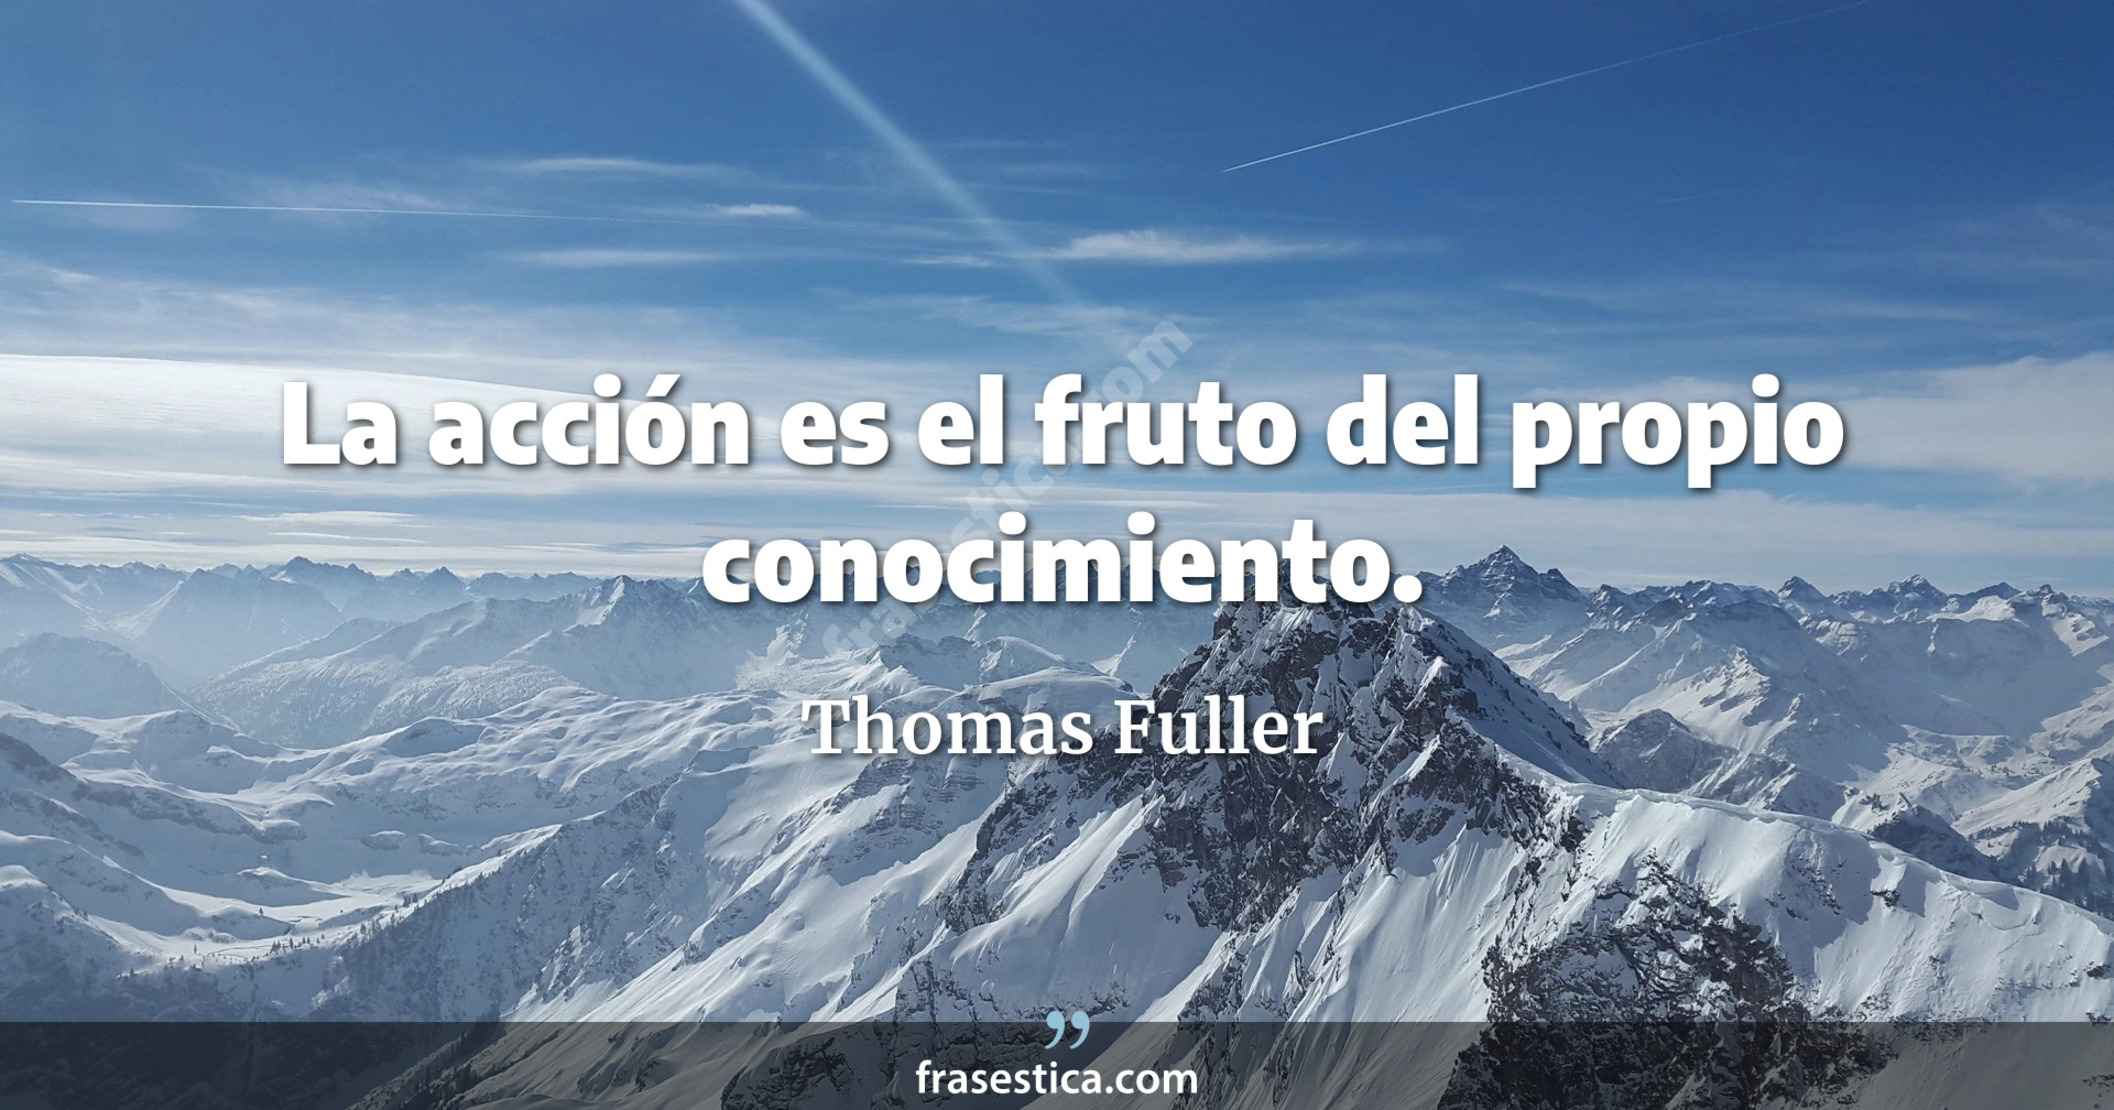 La acción es el fruto del propio conocimiento. - Thomas Fuller